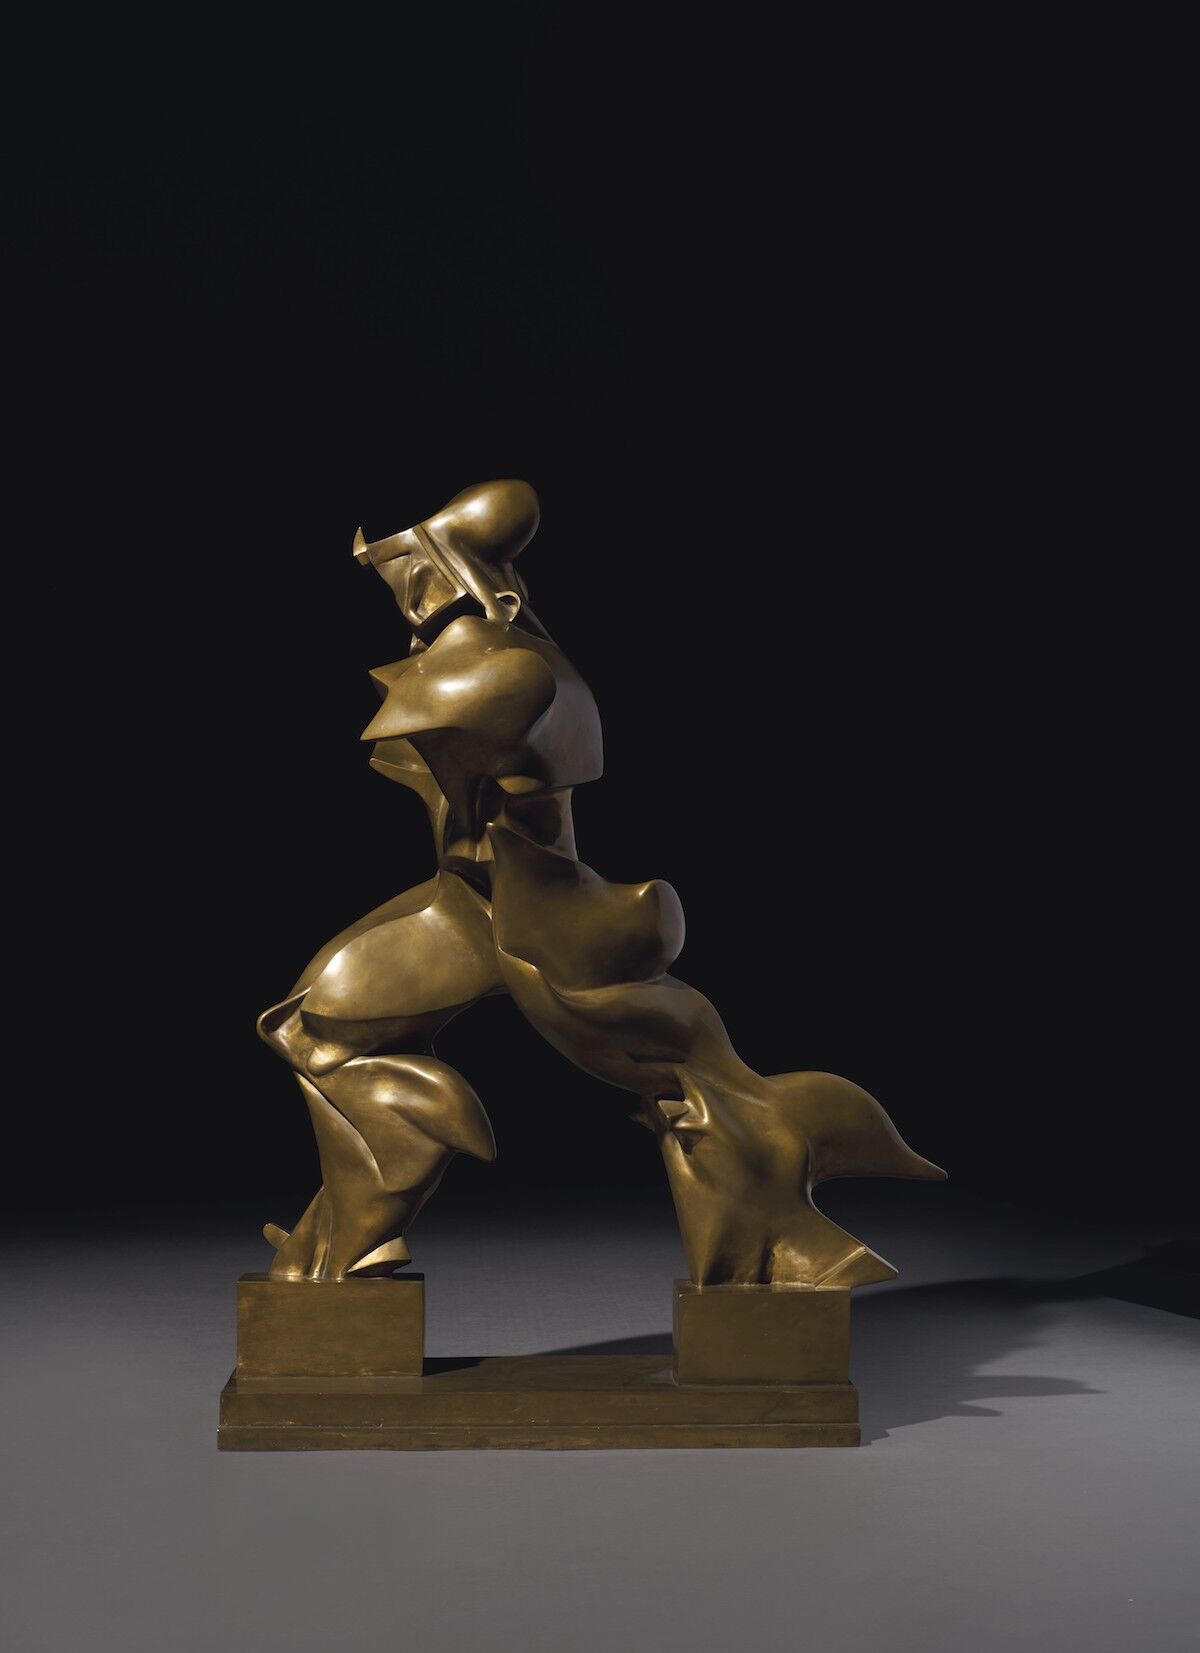 Umberto Boccioni, Forme uniche della continuità nello spazio (Unique Forms of Continuity in Space), 1913. Sold for $16.1 million. Courtesy Christie’s Images Ltd.